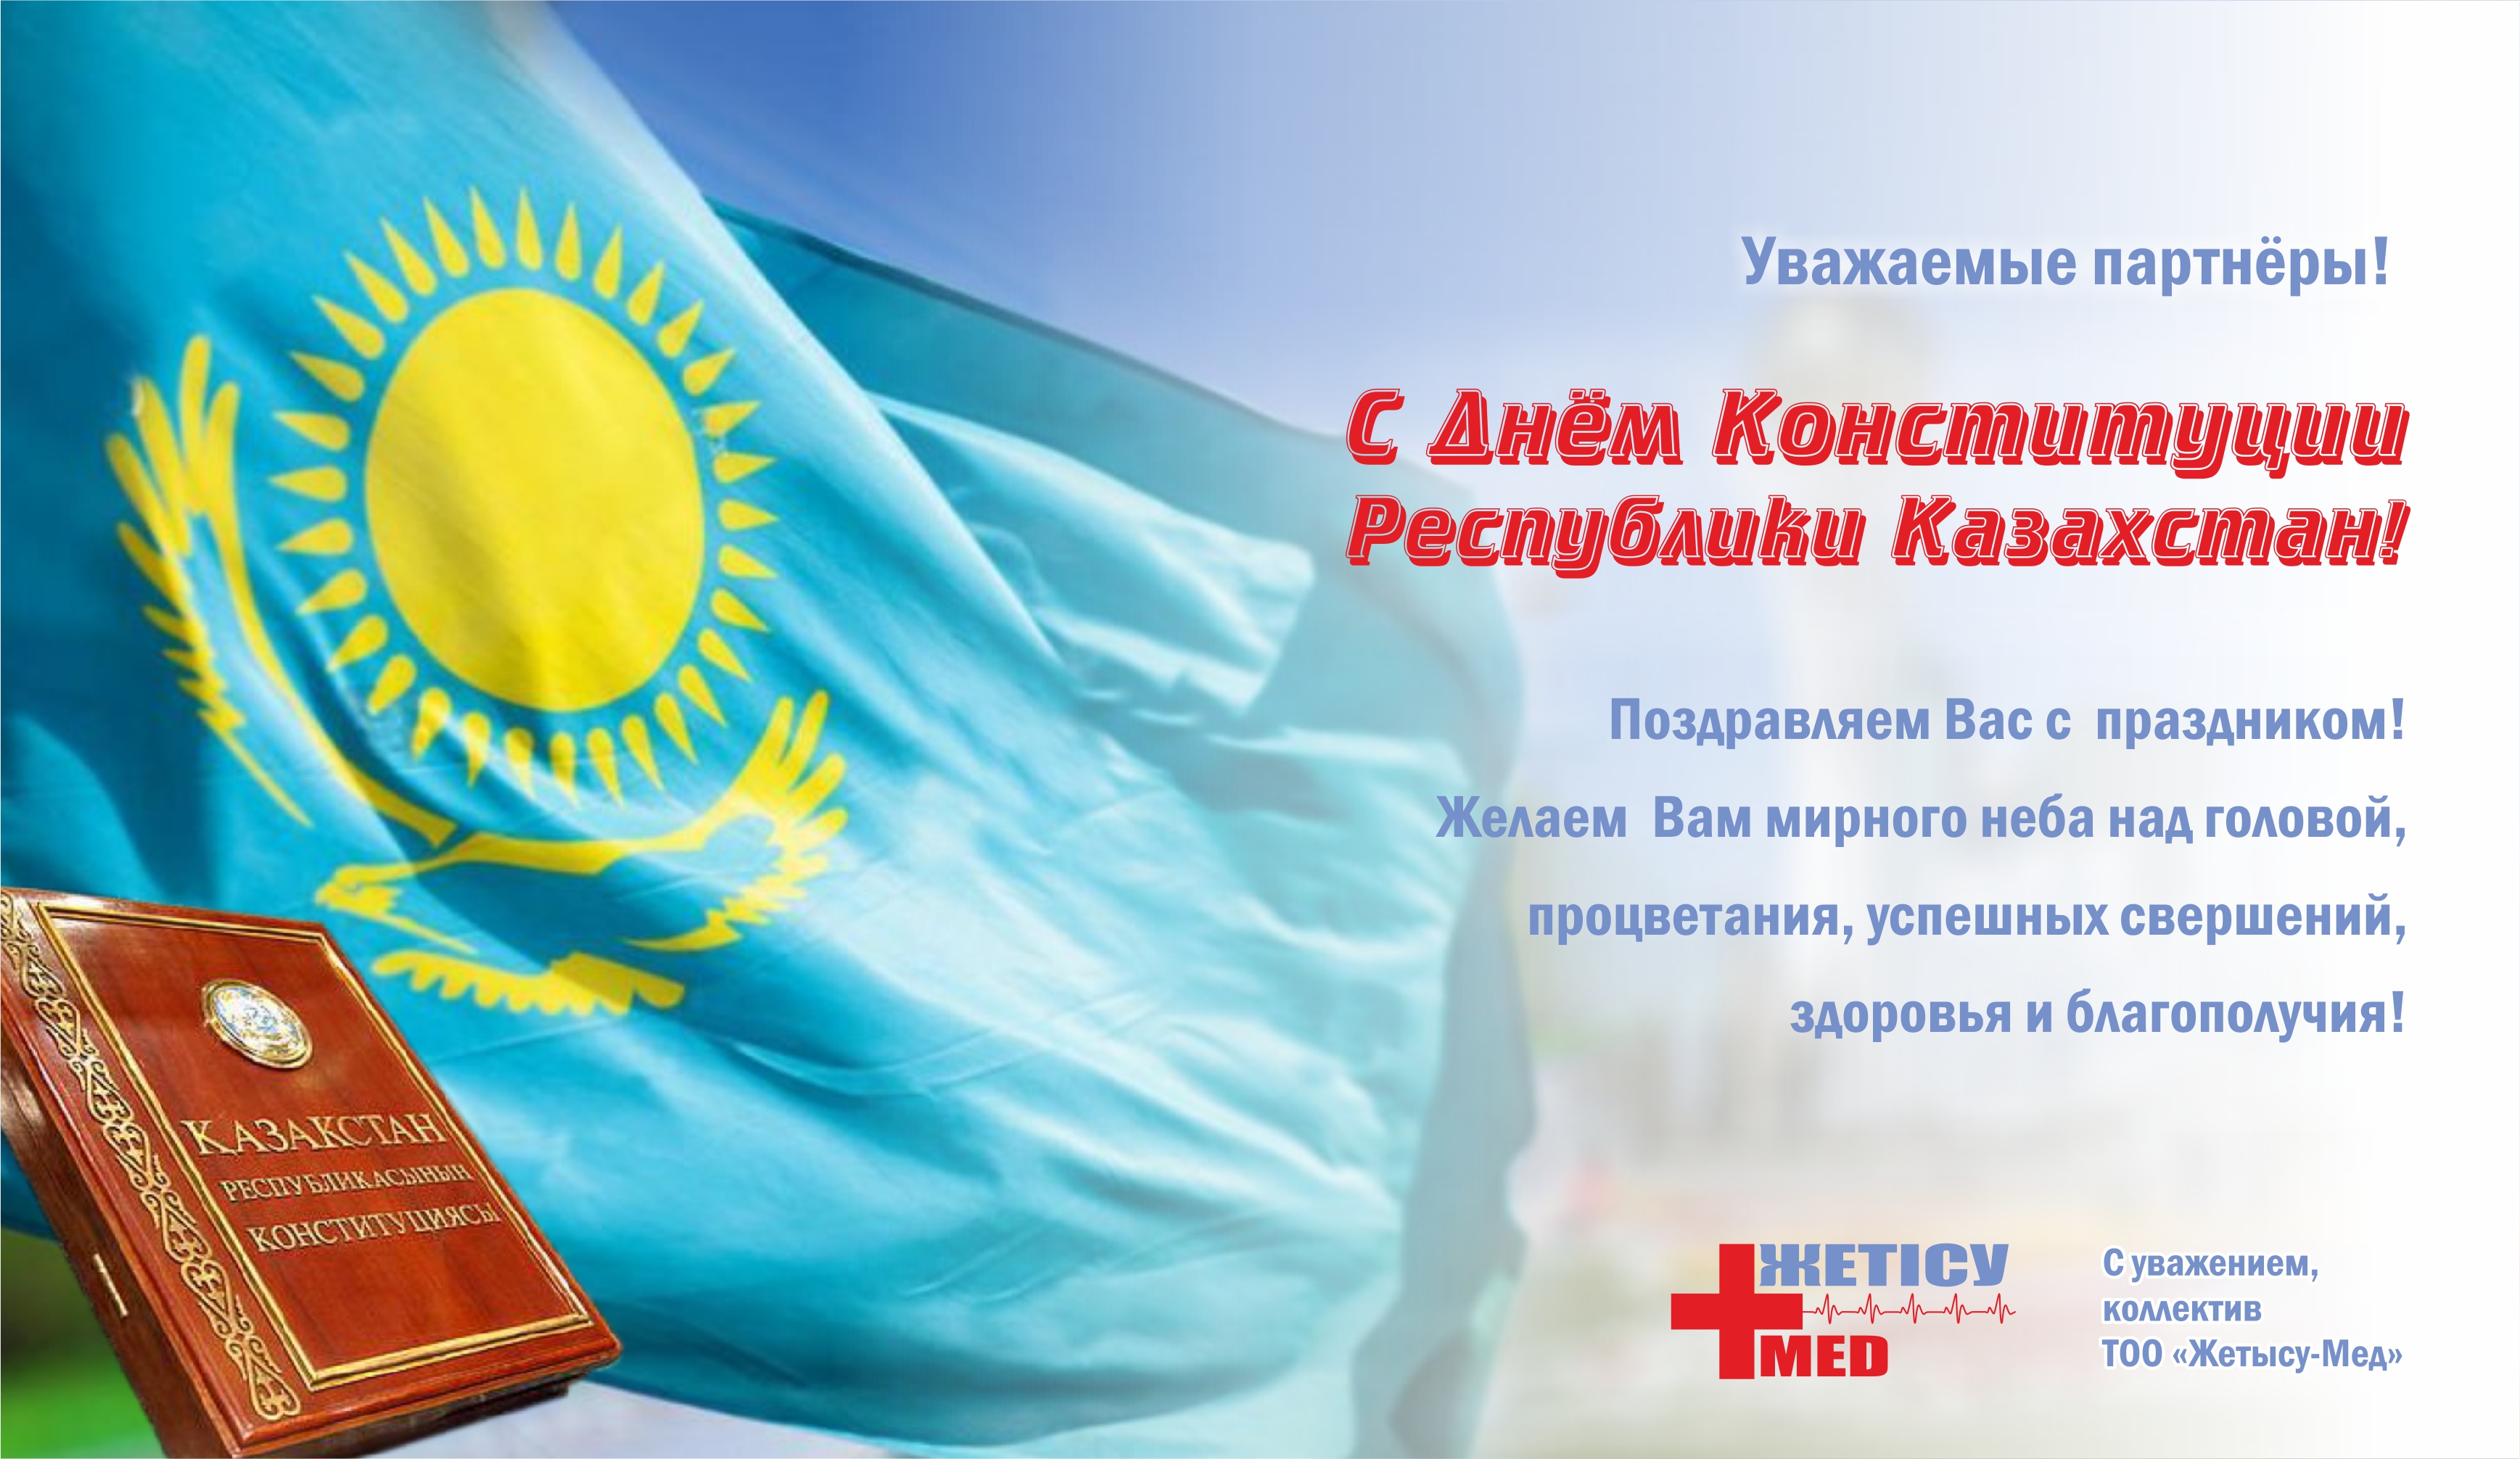 Этикет в казахстане: знакомство и приветствие, прием гостей, деловой этикет, речевой этикет